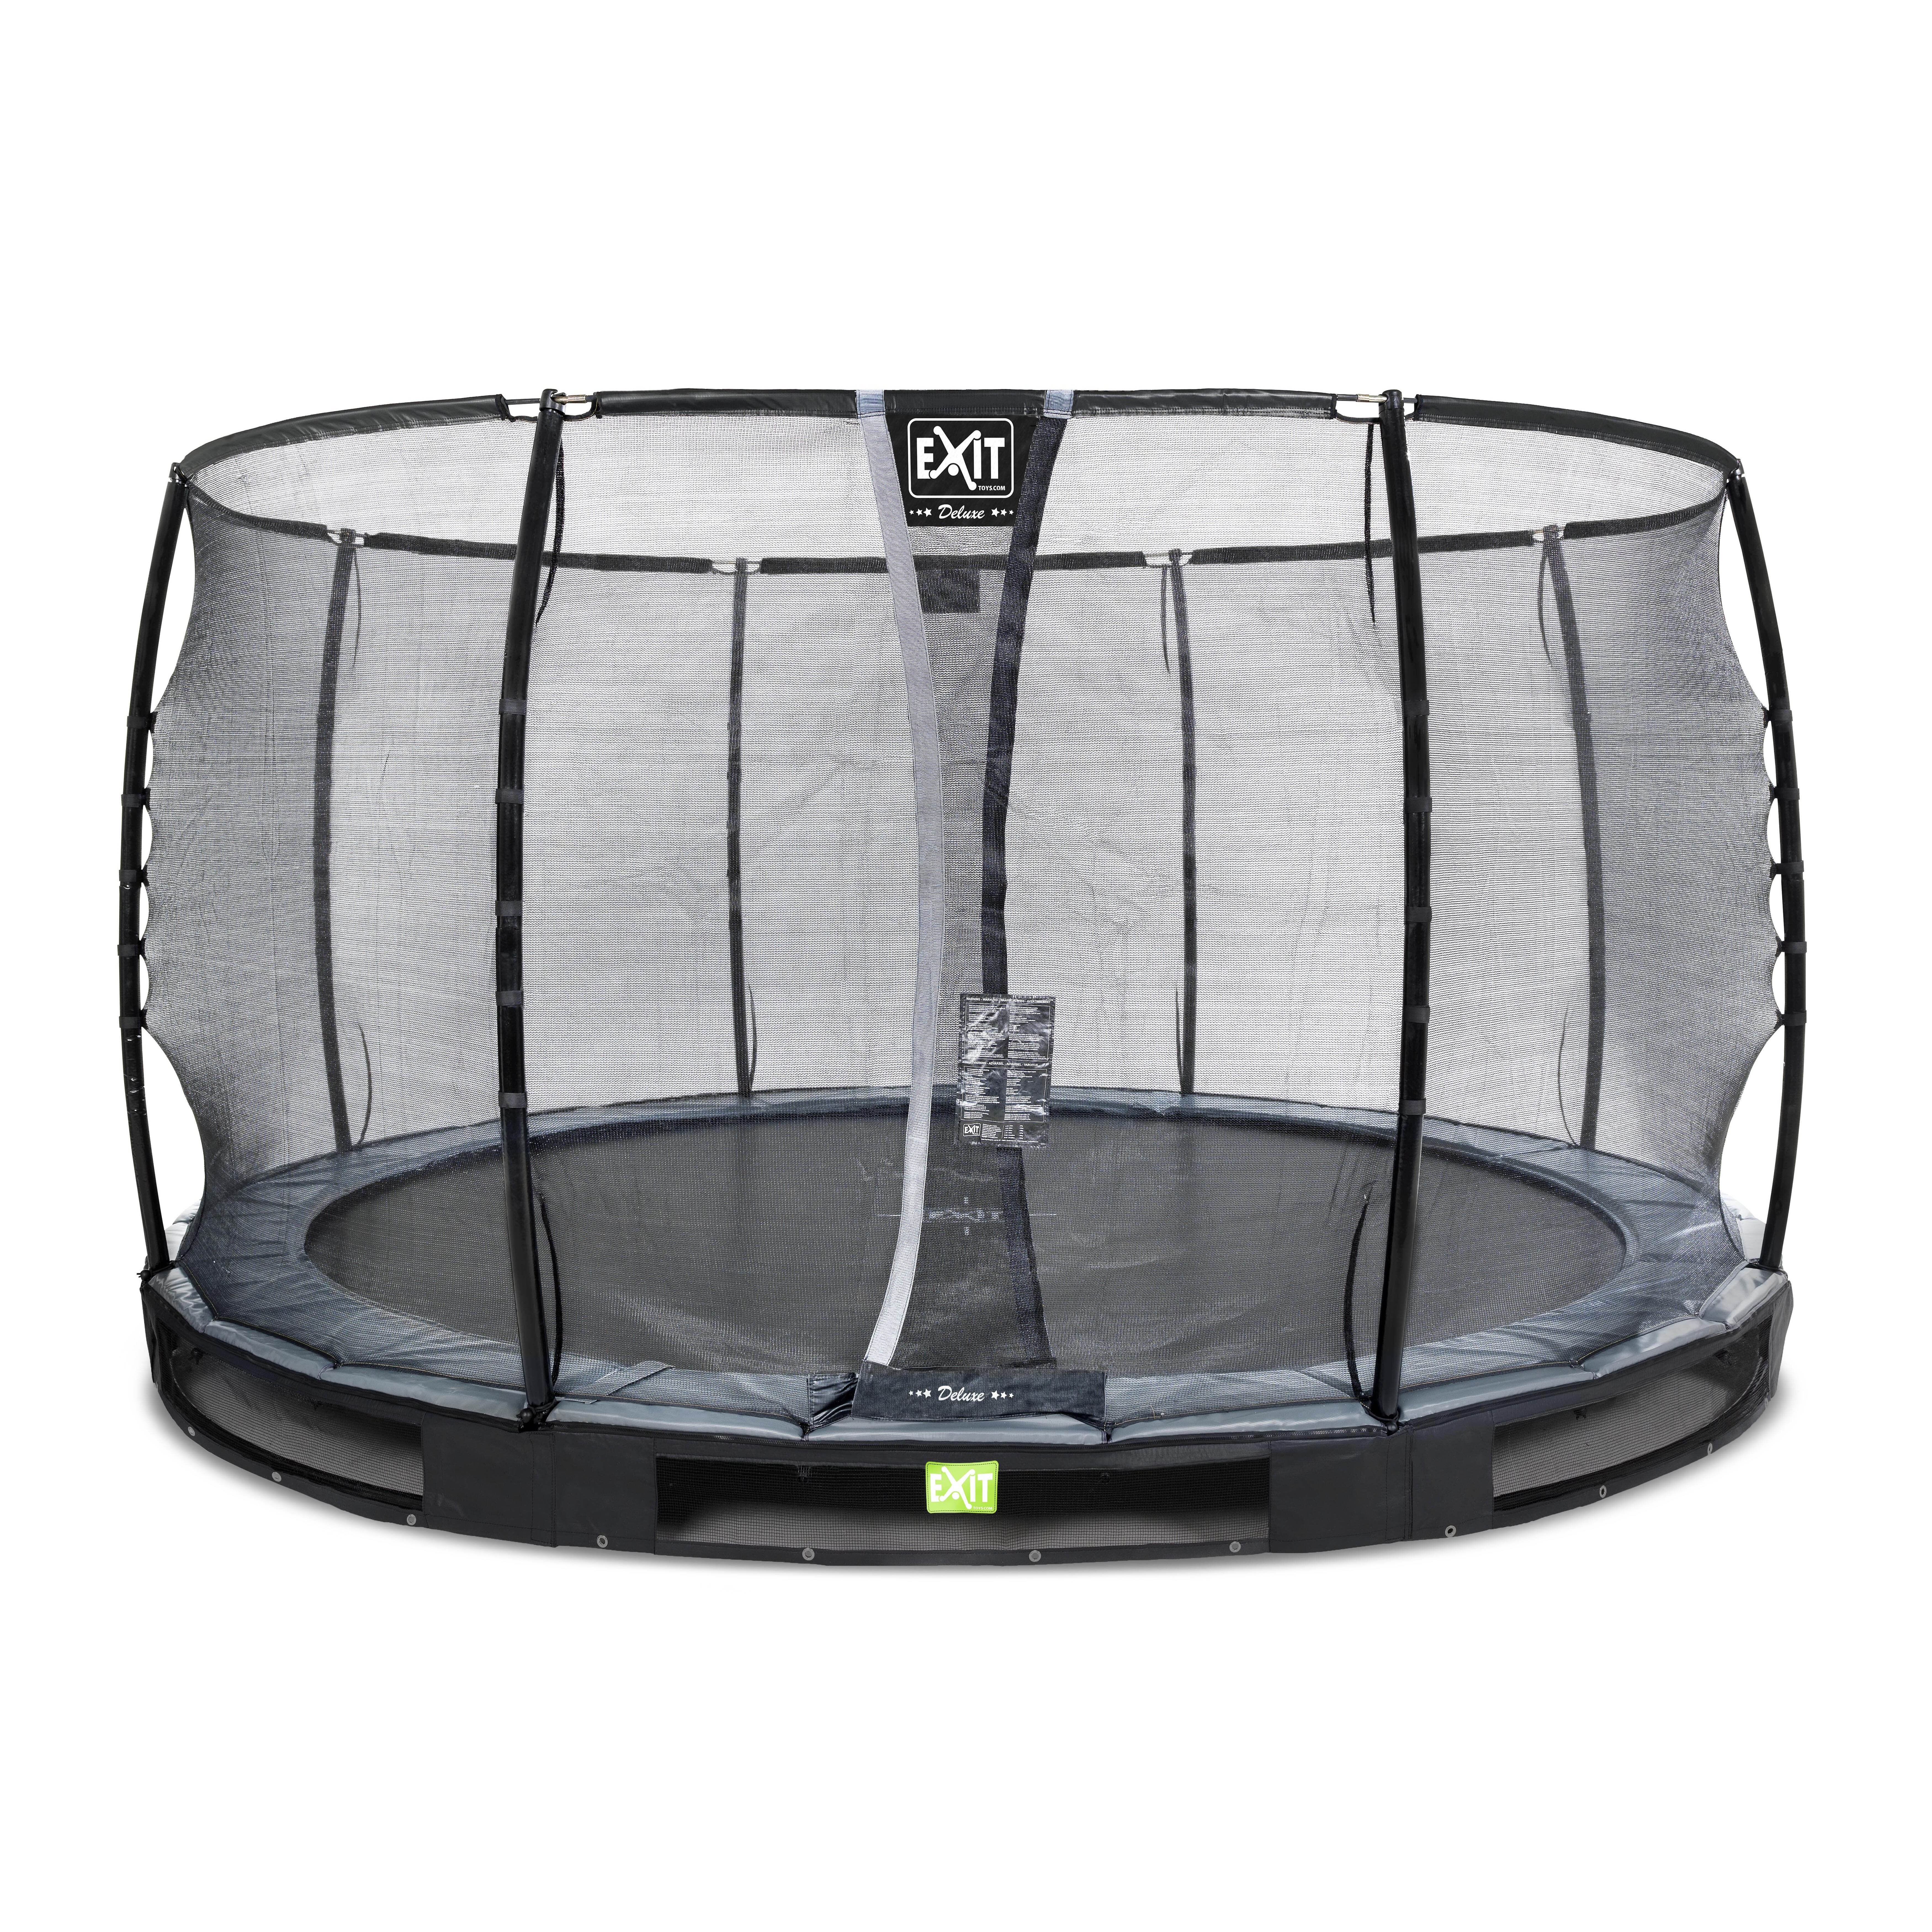 ufravigelige skrivning orientering EXIT Elegant Premium nedgravet trampolin ø366cm med sikkerhedsnet